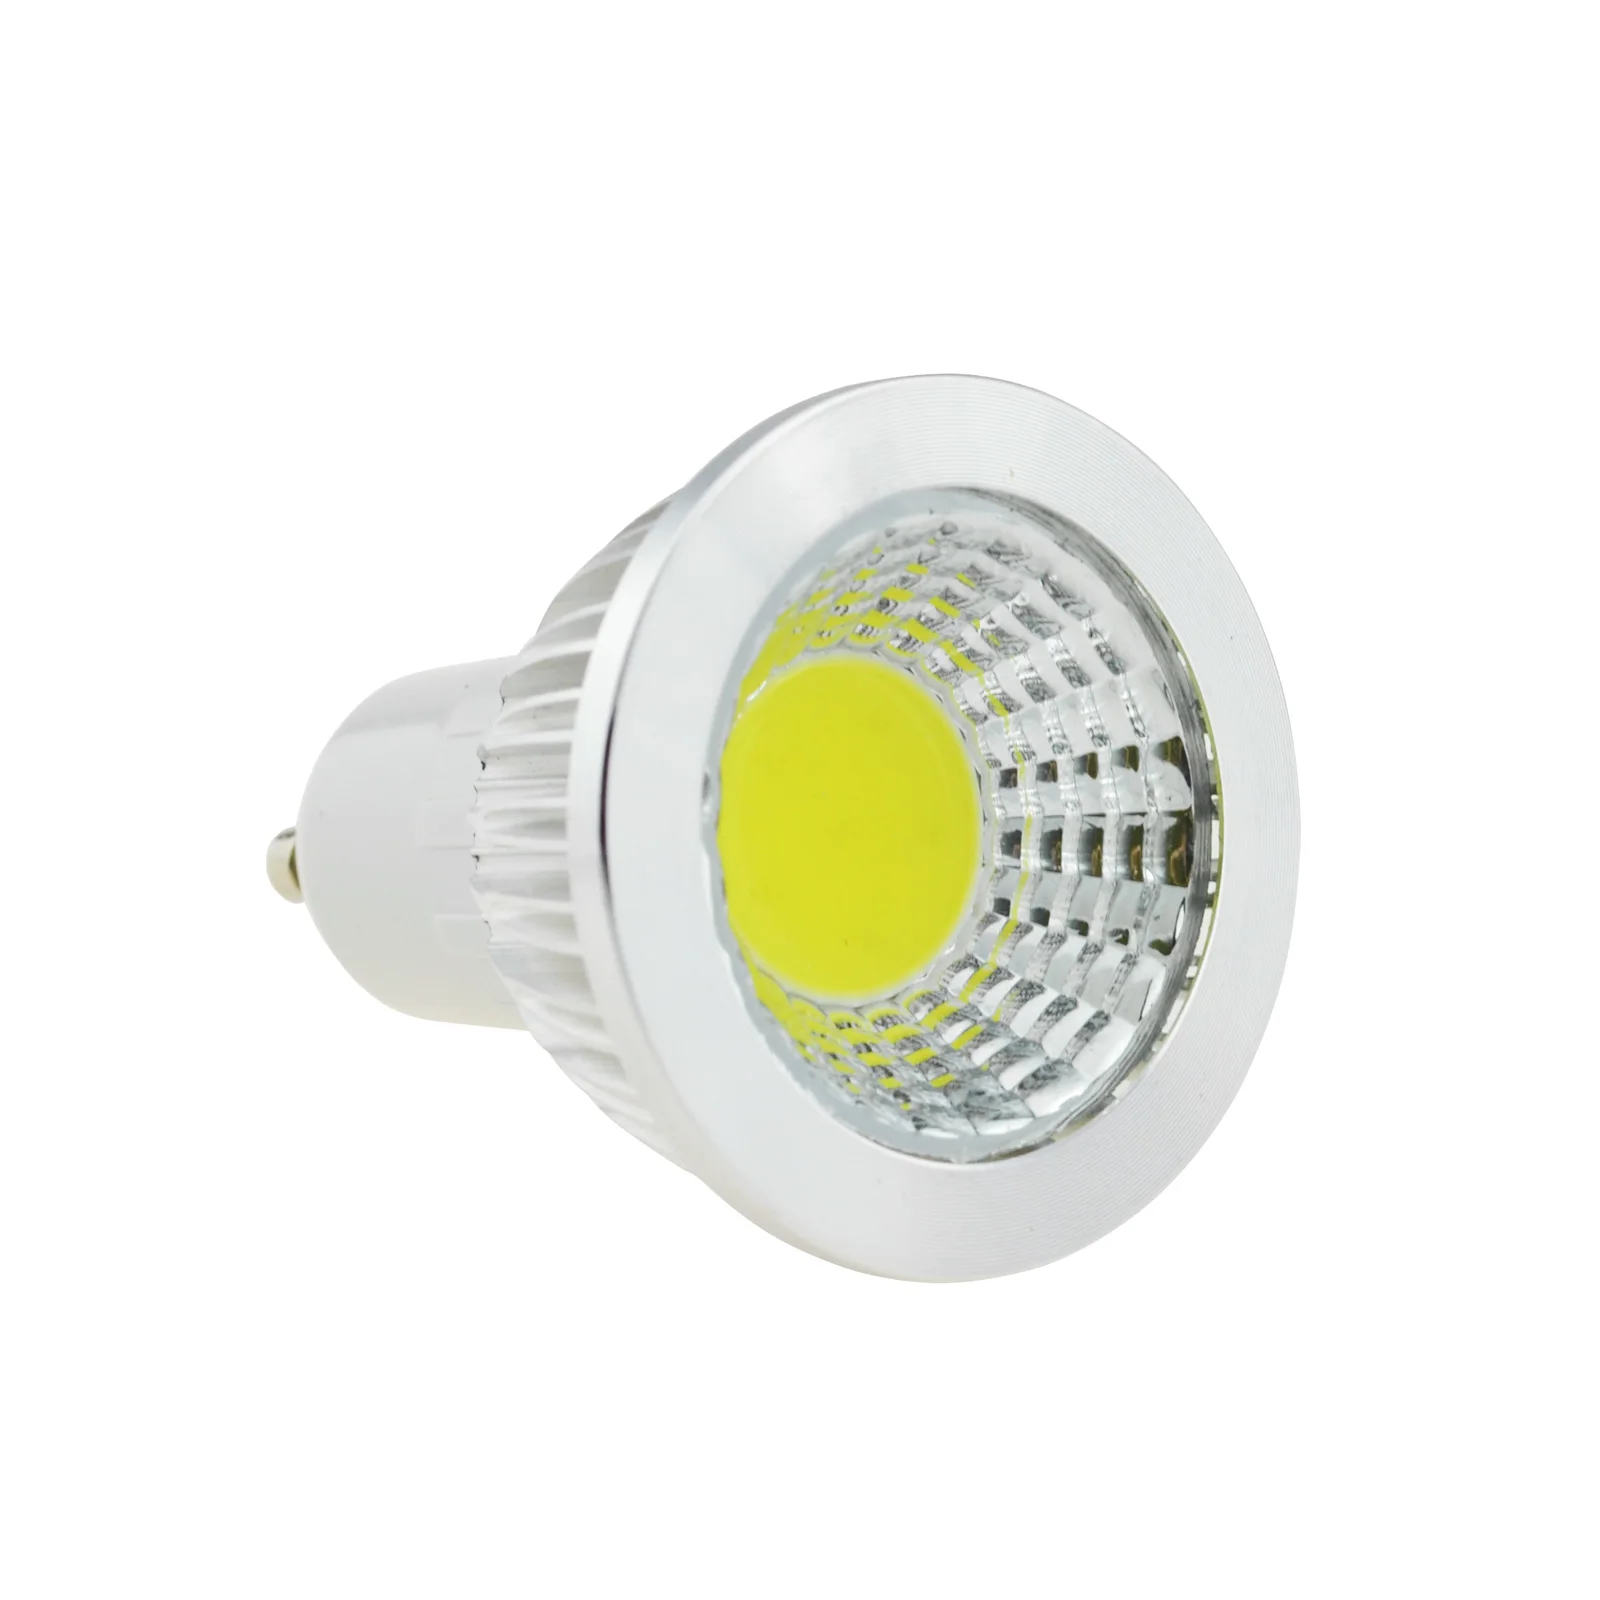 

E12 E14 E27 B22 COB LED Spotlight Dimming High Brightness Cob LED Lights 6W 9W 12W Lampada LED Lamp 110V 220V 85-265V White